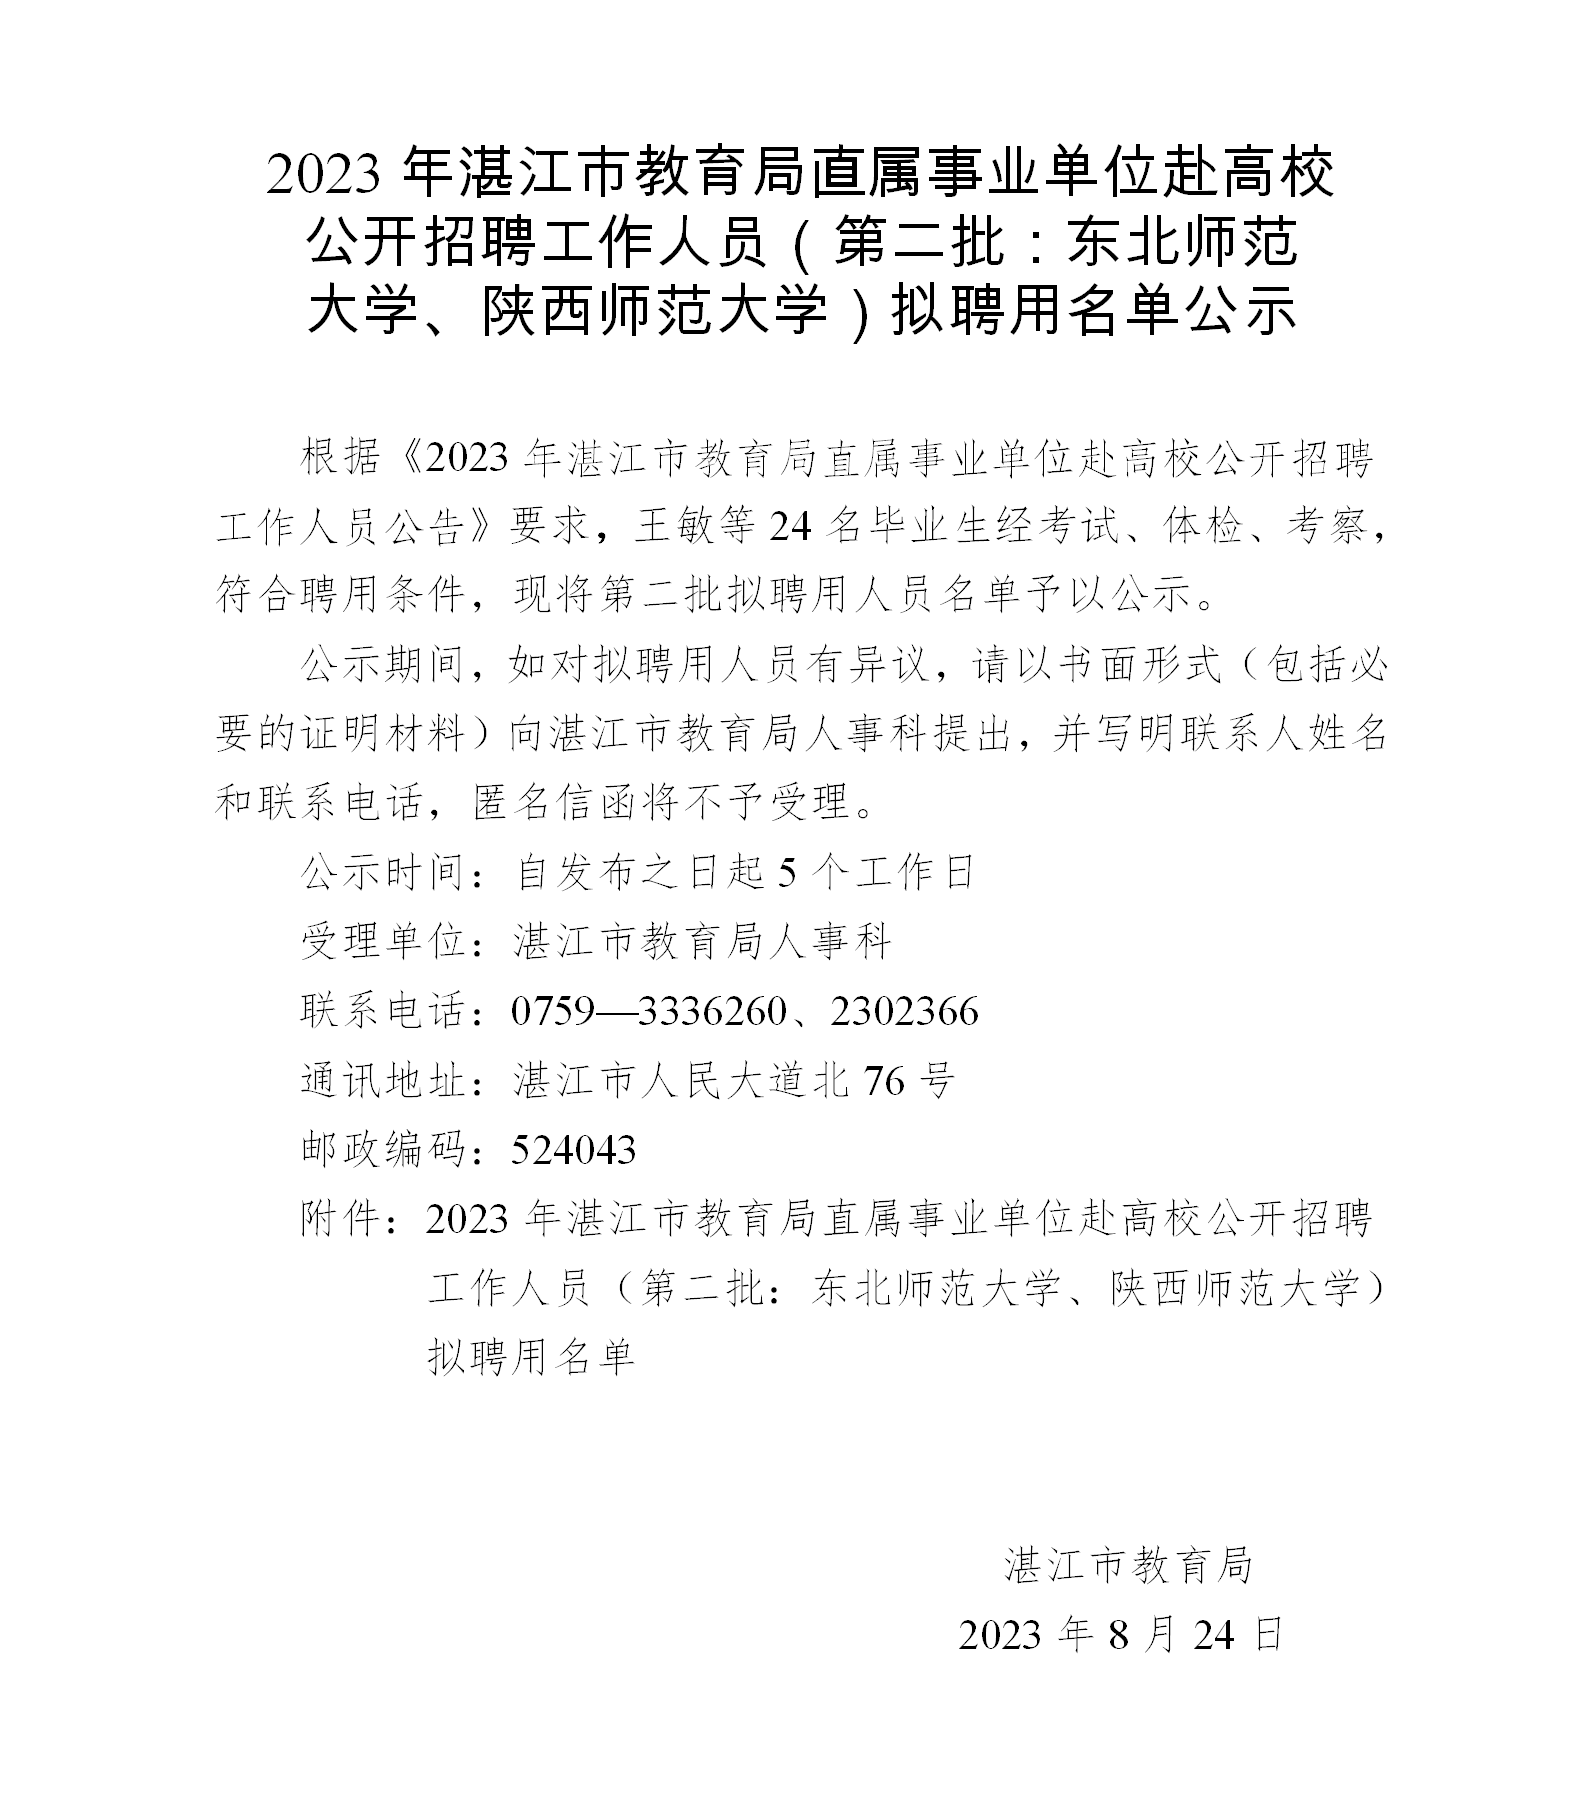 2023年湛江市教育局直属事业单位赴高校公开招聘工作人员（第二批：东北师范大学、陕西师范大学）拟聘用名单公示_01.png